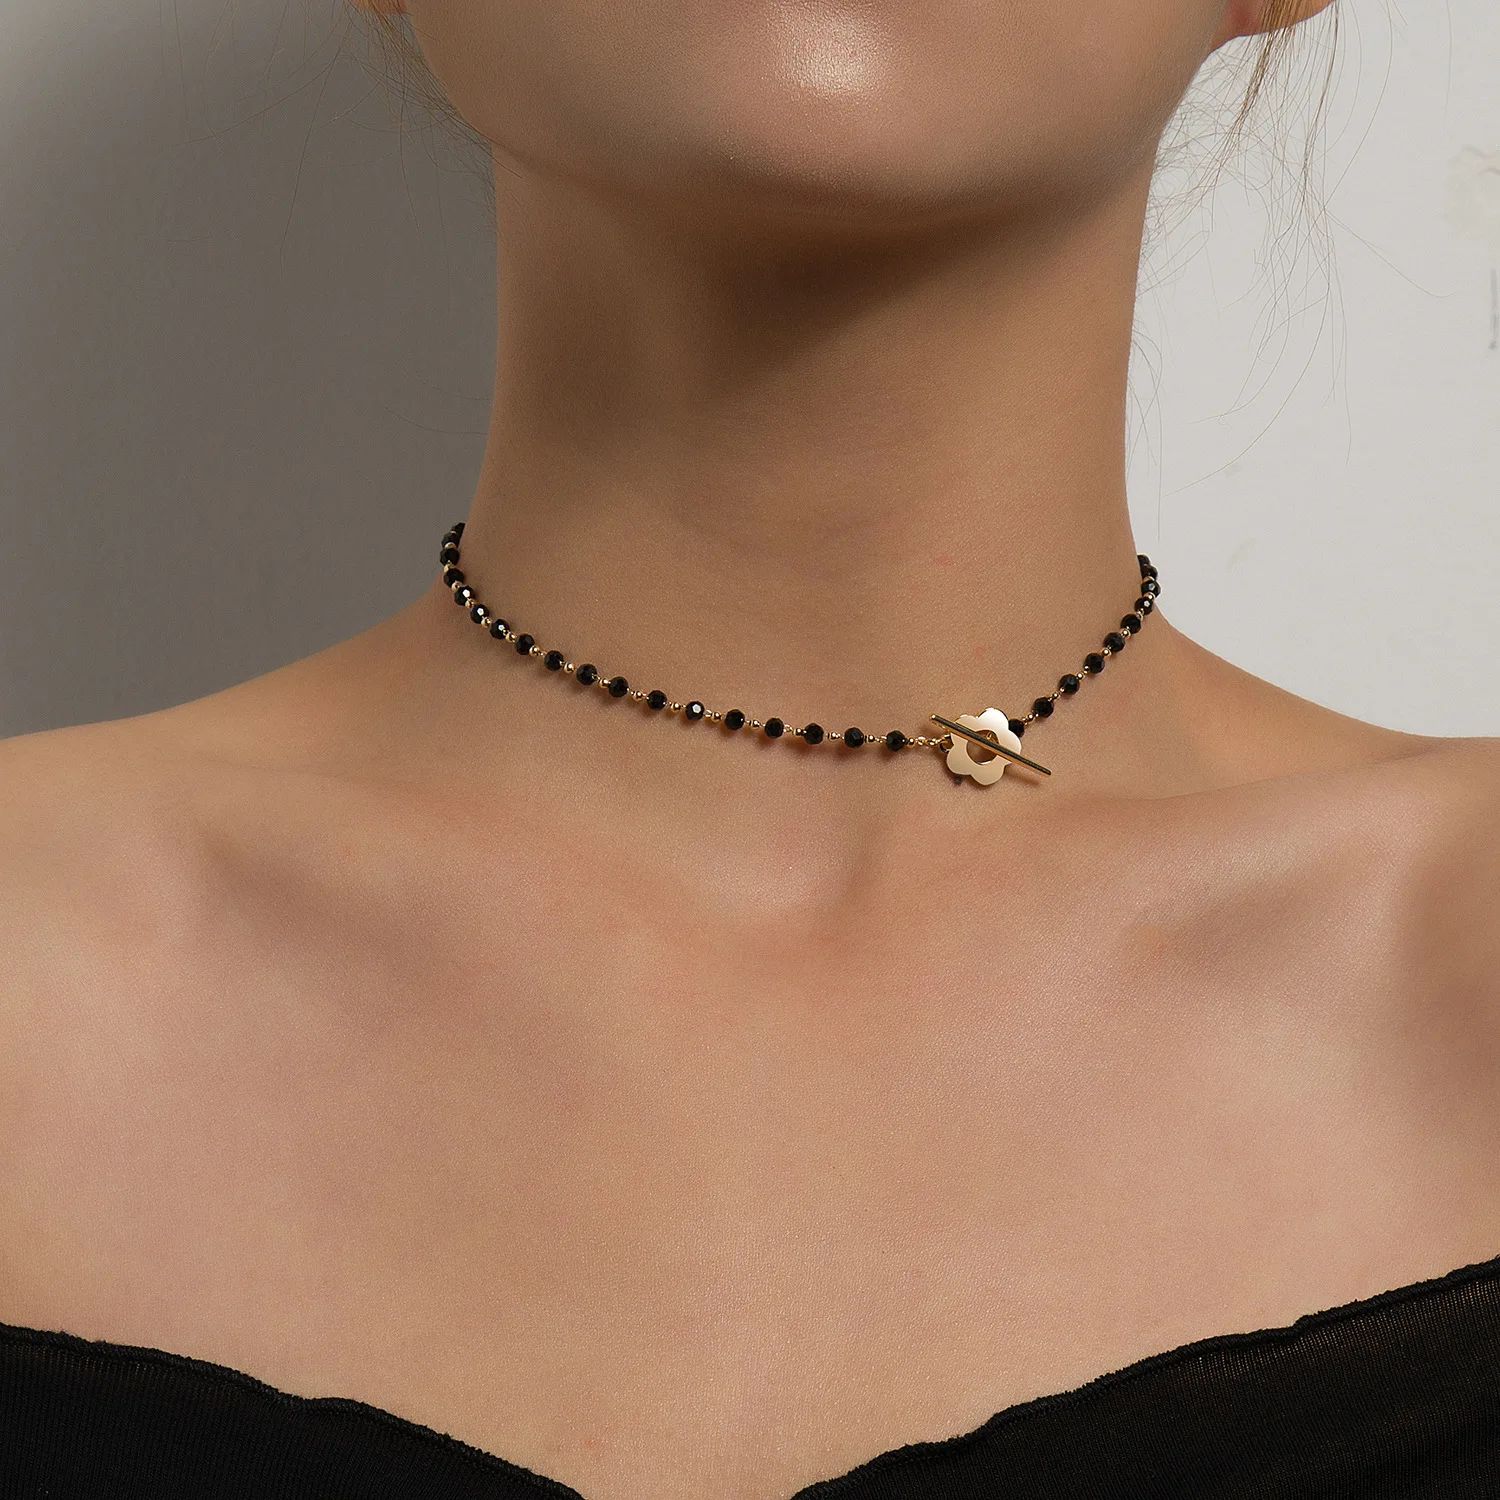 Women wide choker metal flowers jewelry dressy short necklace black beads stones 